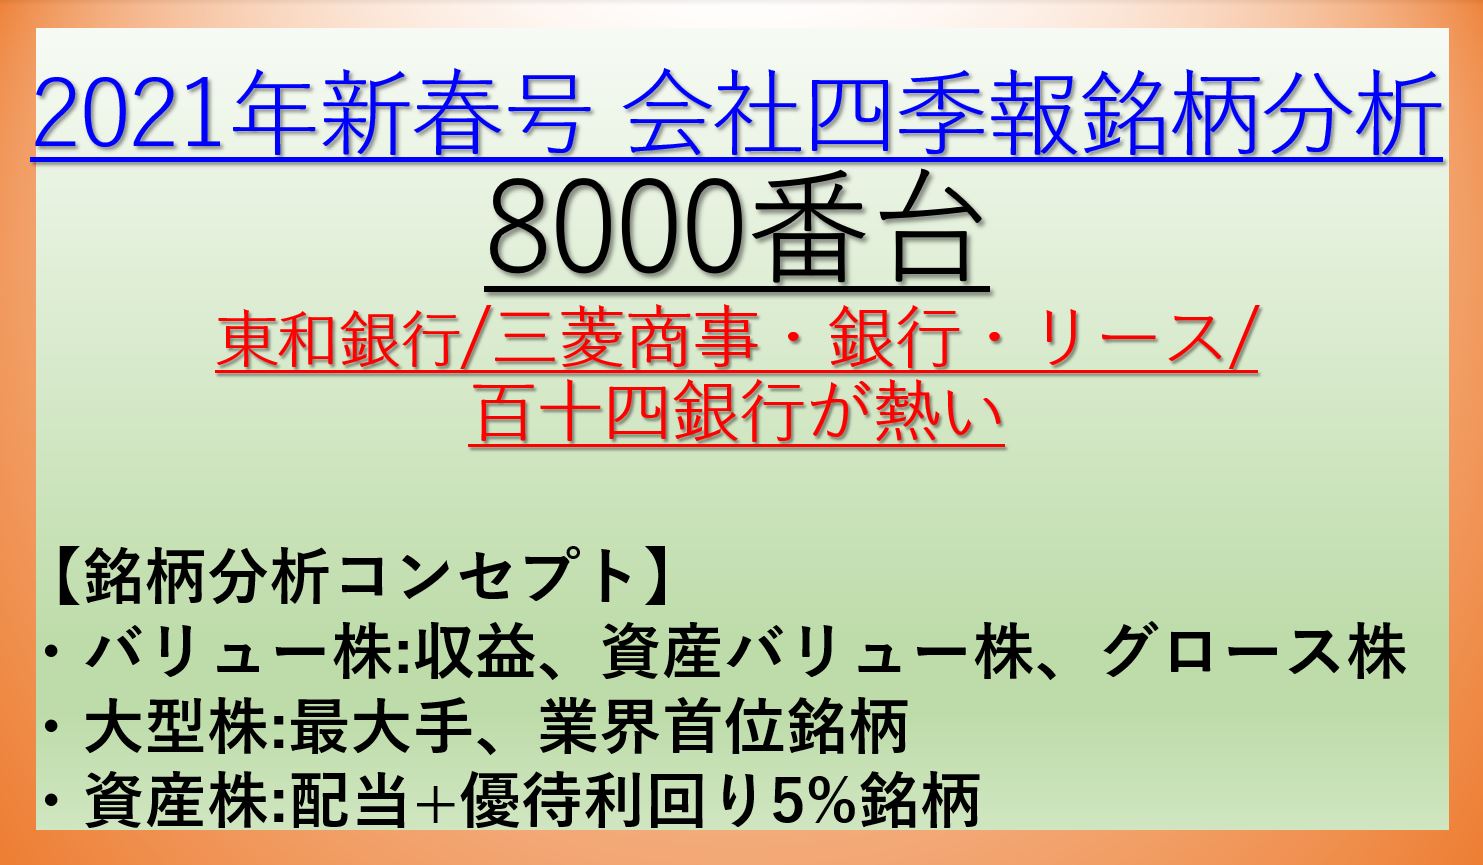 2021年新春号-会社四季報銘柄分析-8000番台